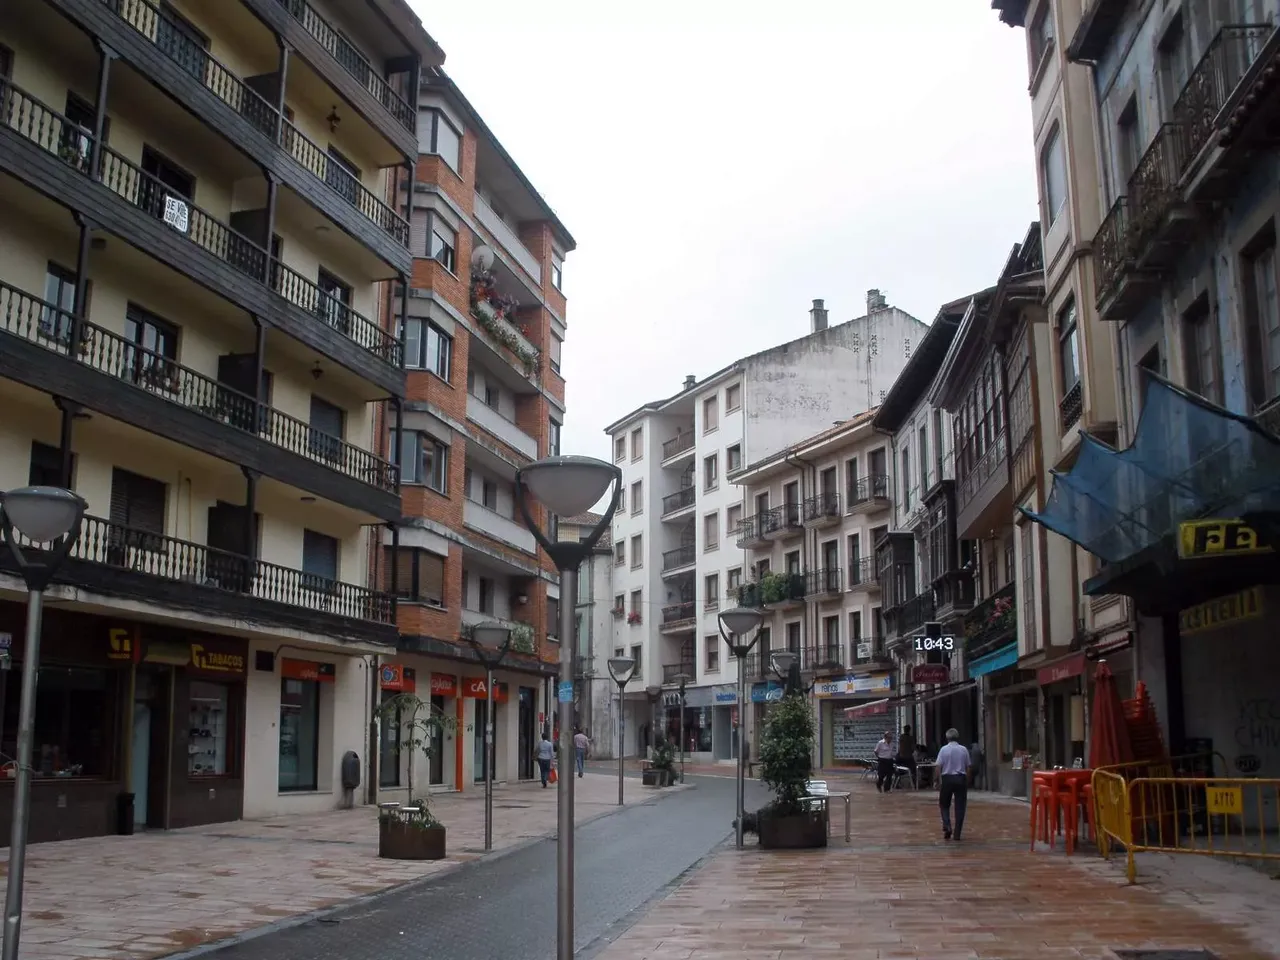 Grado | Asturias Region, Spain - Rated 2.3